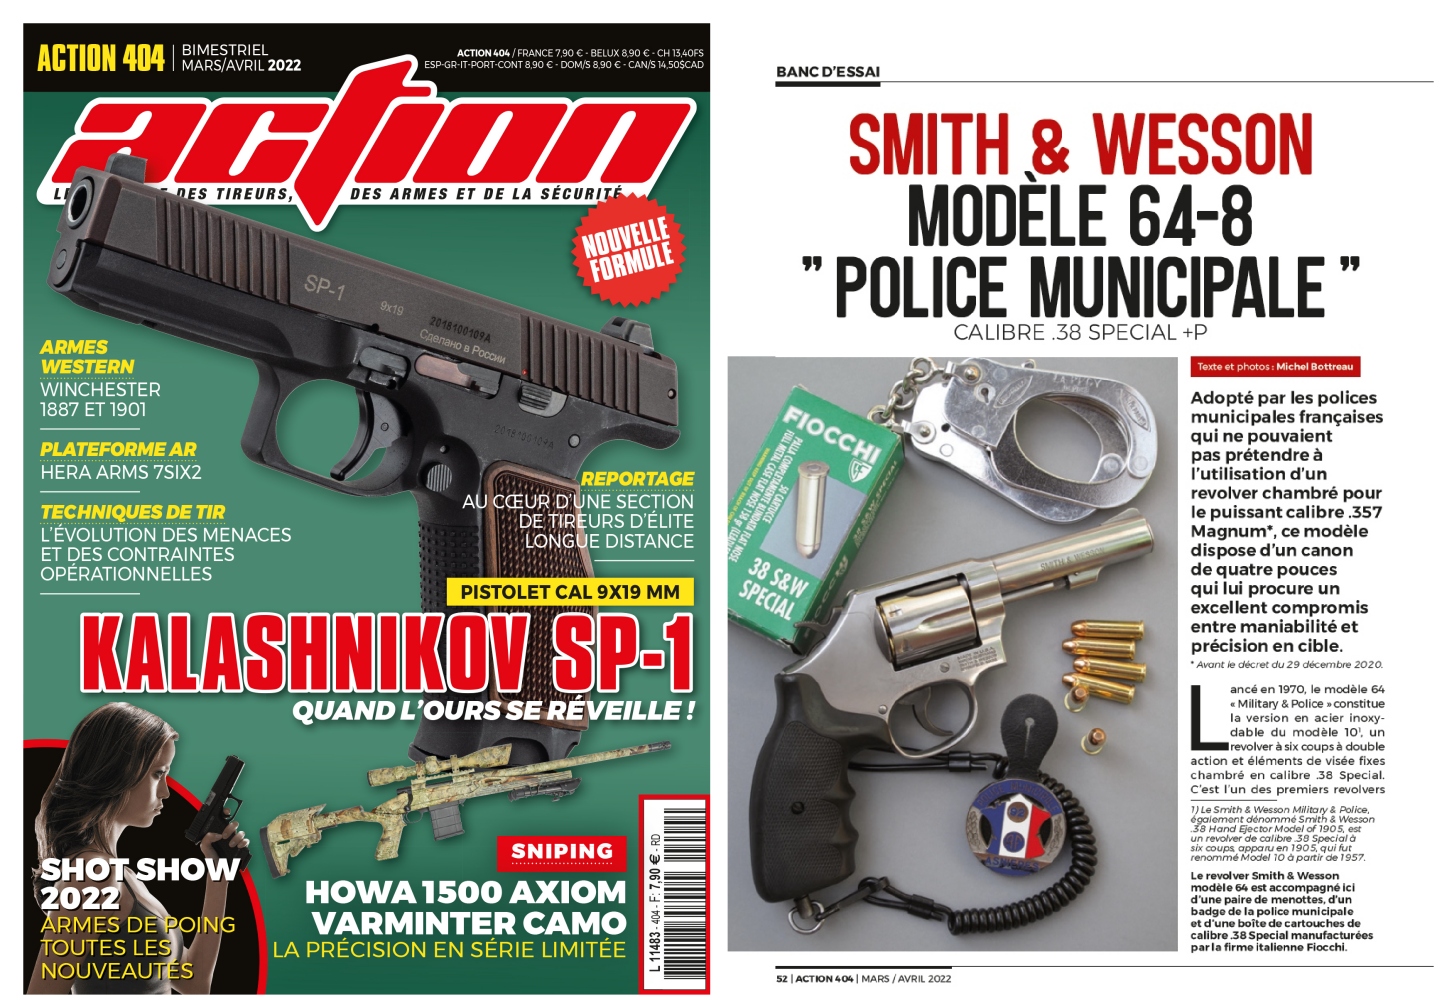 Le banc d’essai du revolver Smith & Wesson modèle 64-8 a été publié sur 6 pages dans le magazine Action n°404 (mars/avril 2022). 